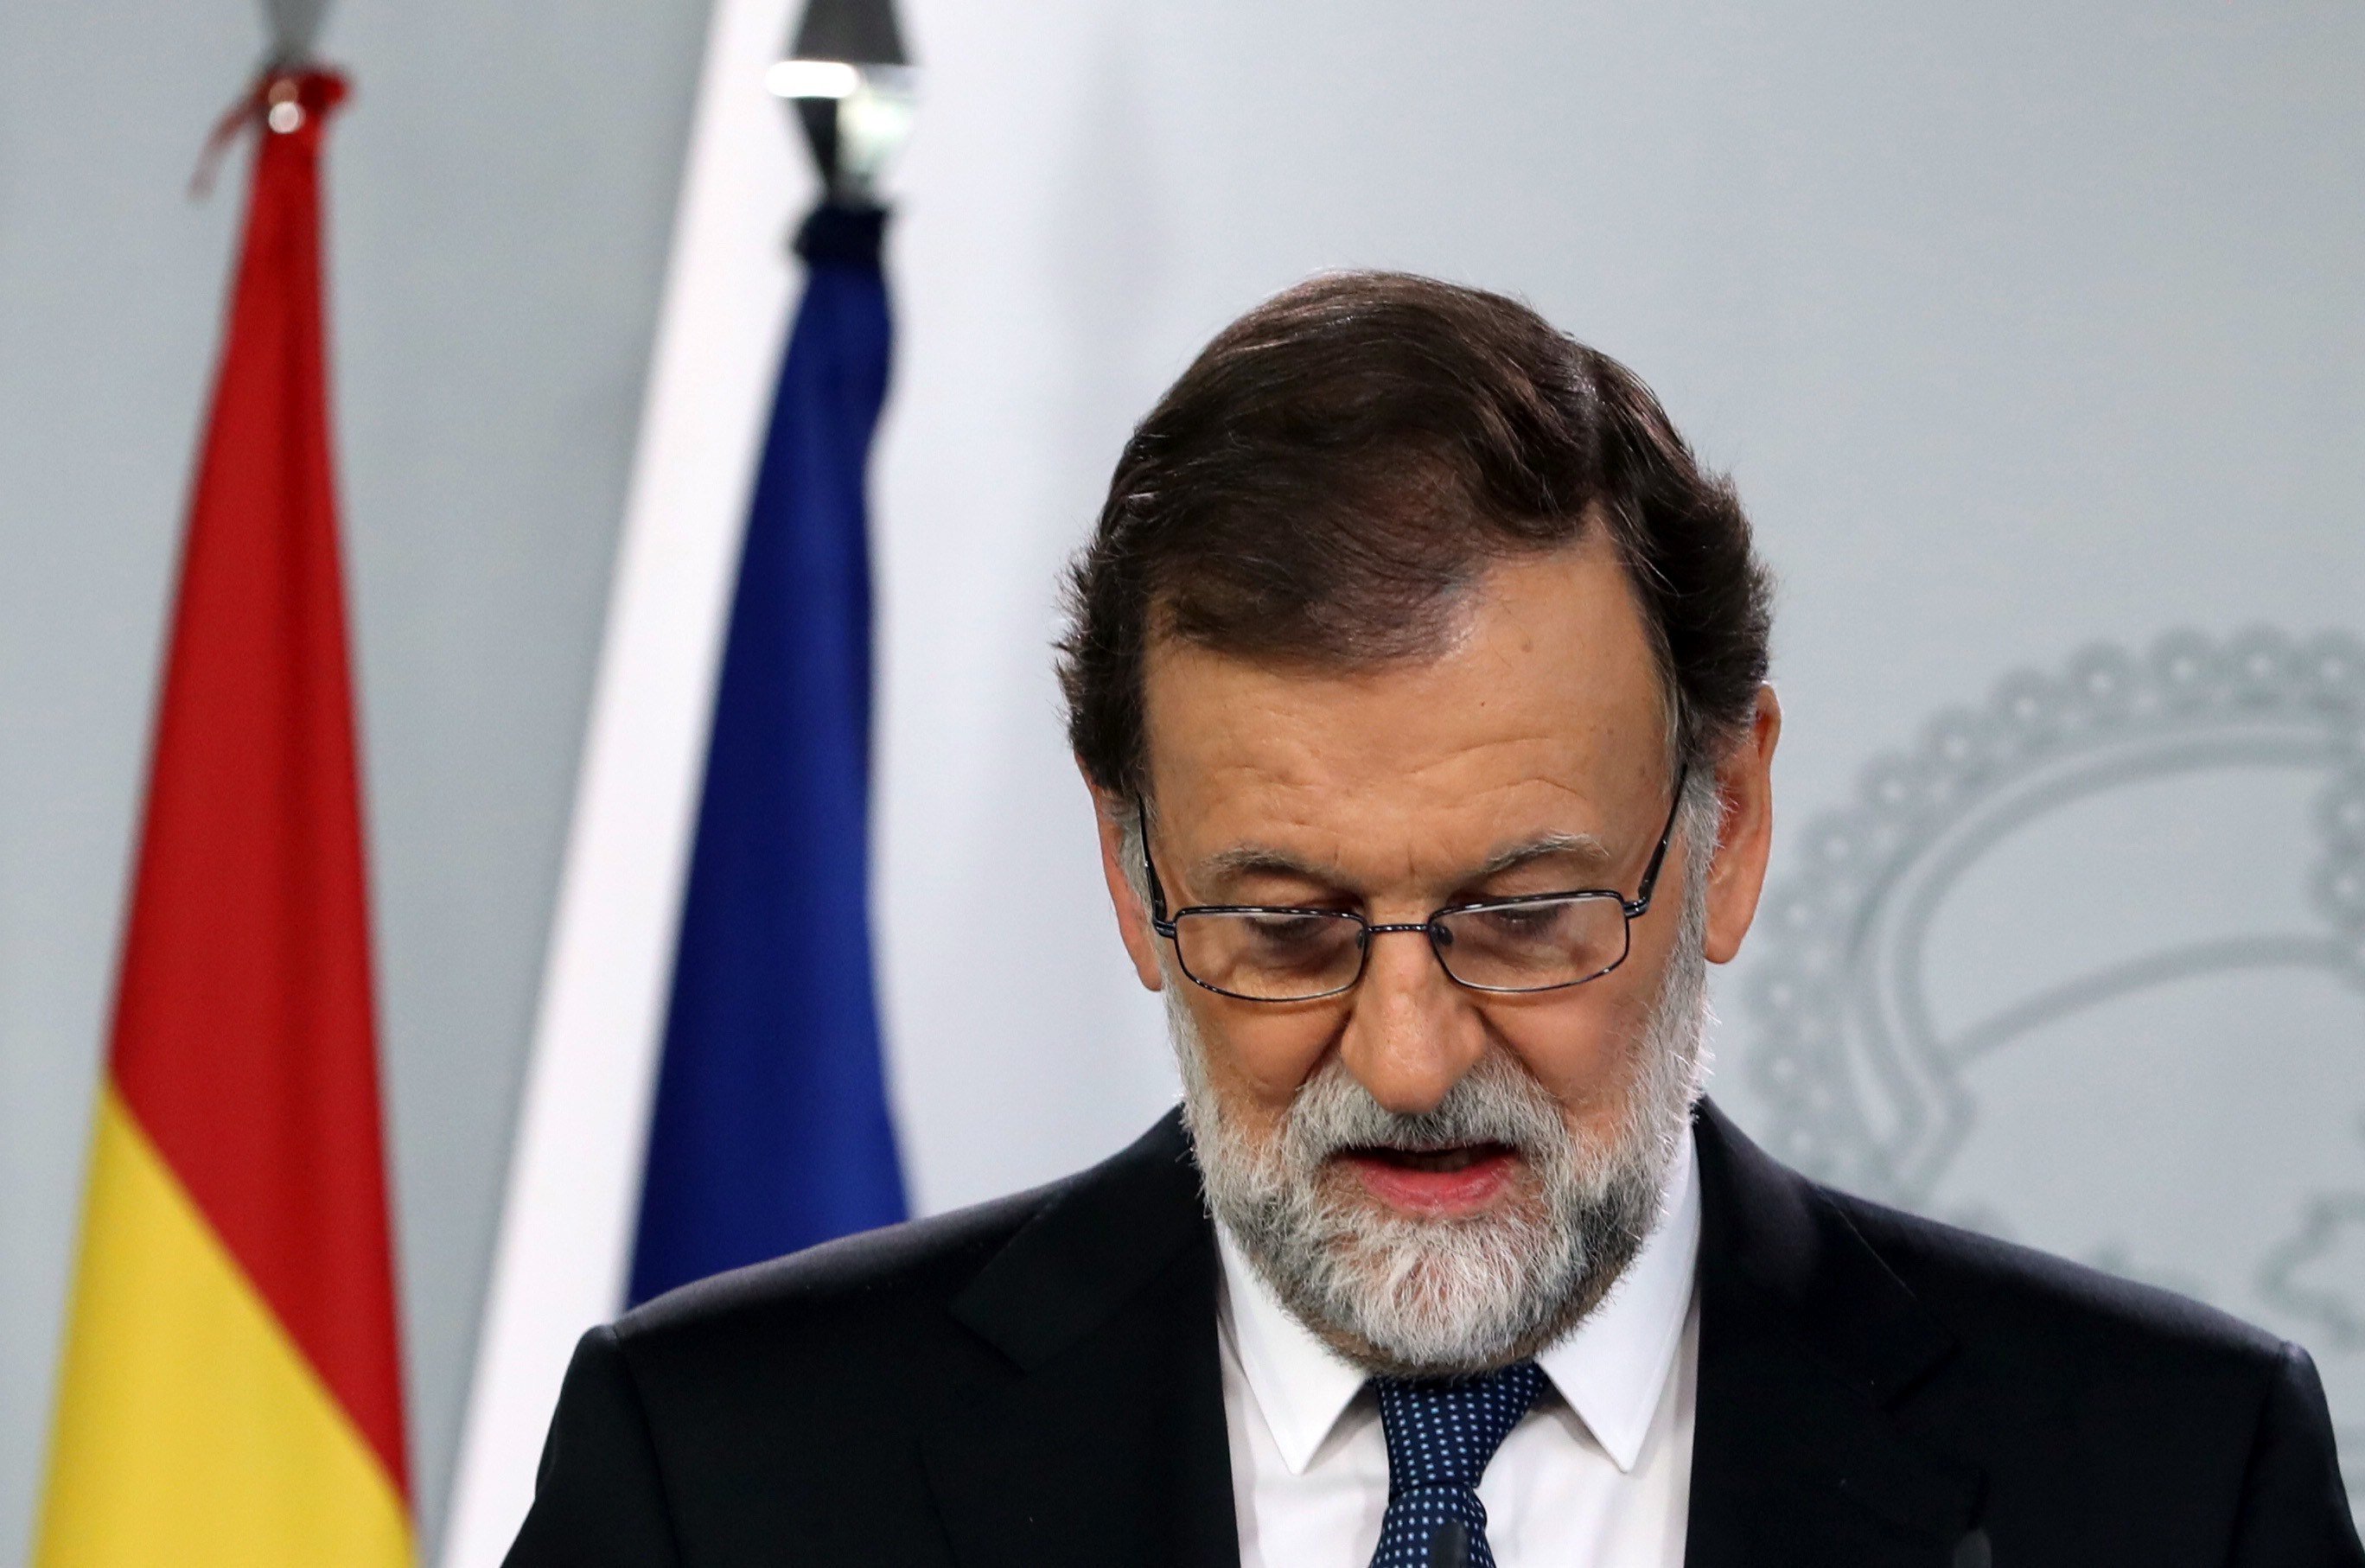 Portazo de Rajoy a la propuesta de mediación de Iglesias